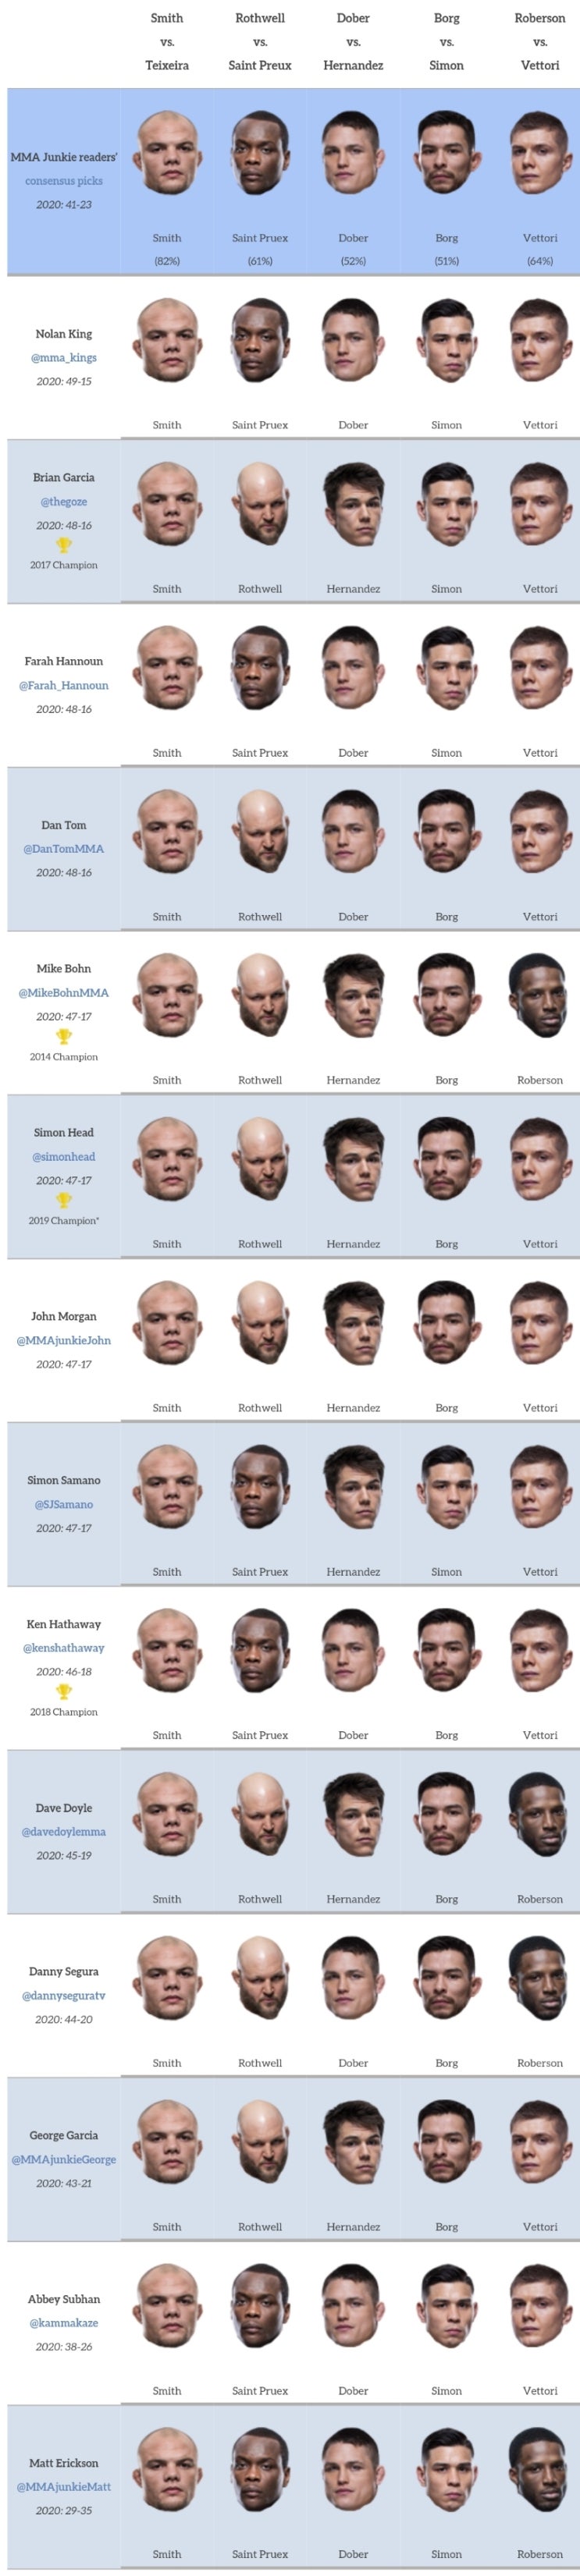 UFC 잭슨빌 : 스미스 vs 테세이라 미디어 예상 및 배당률